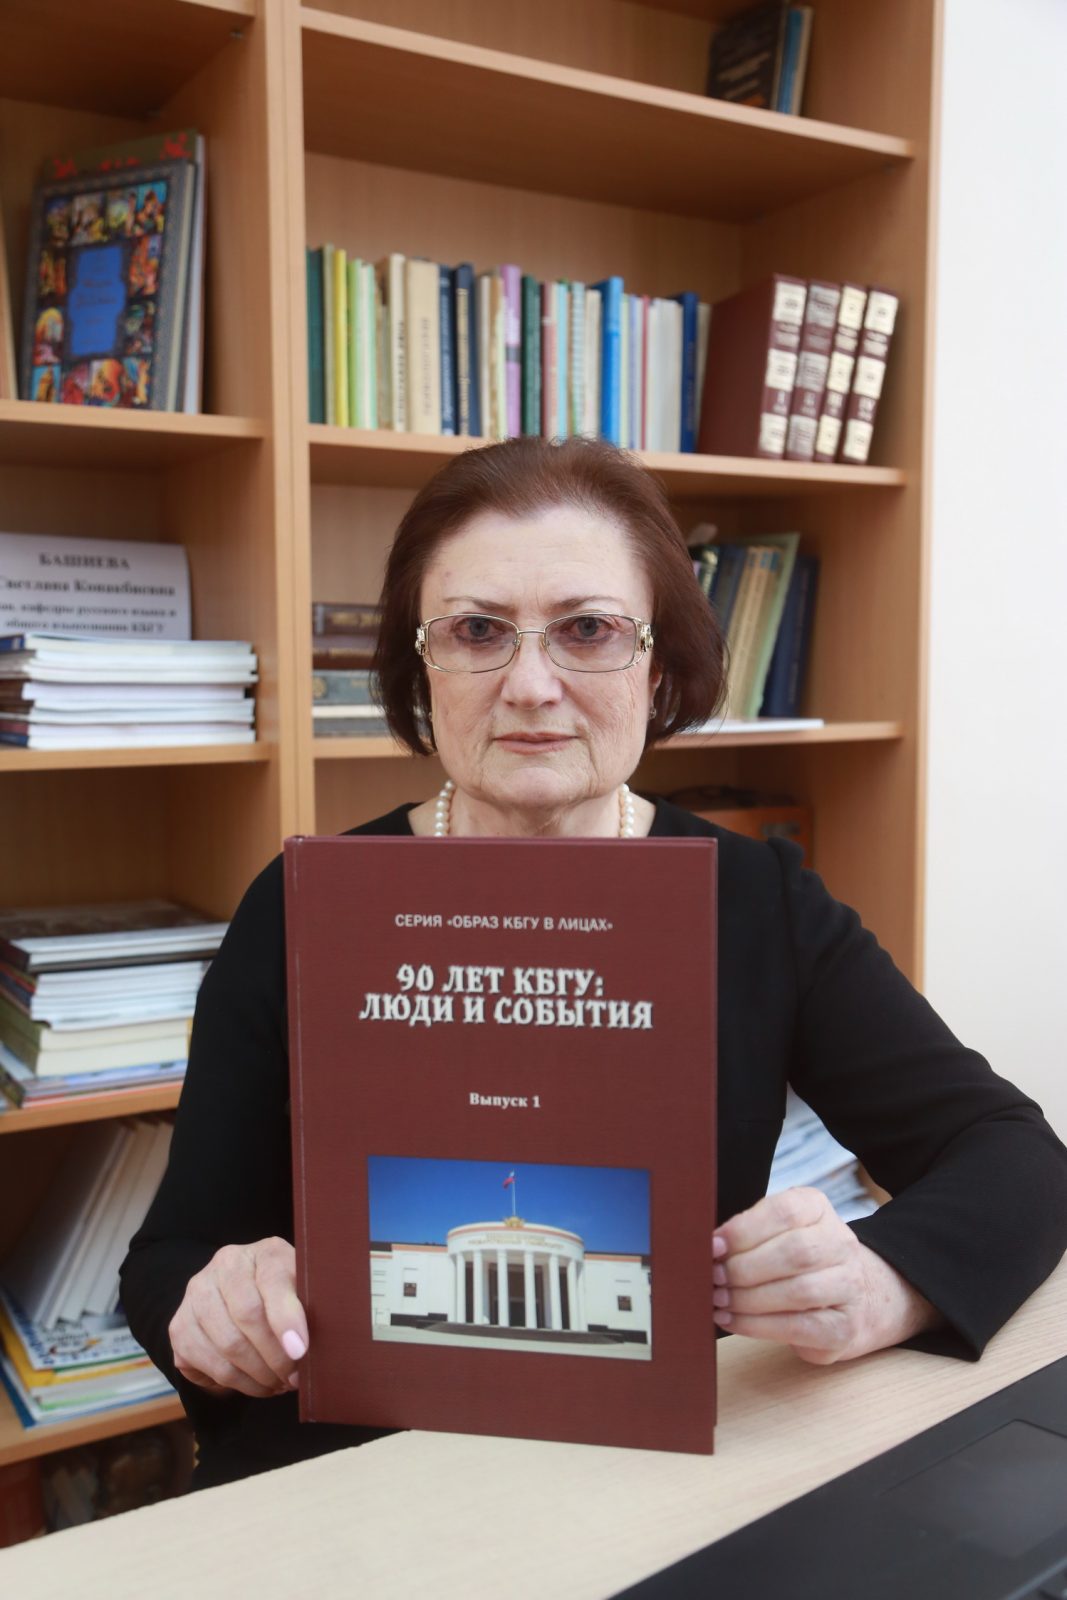 «90 лет КБГУ: люди и события» – книга к юбилею